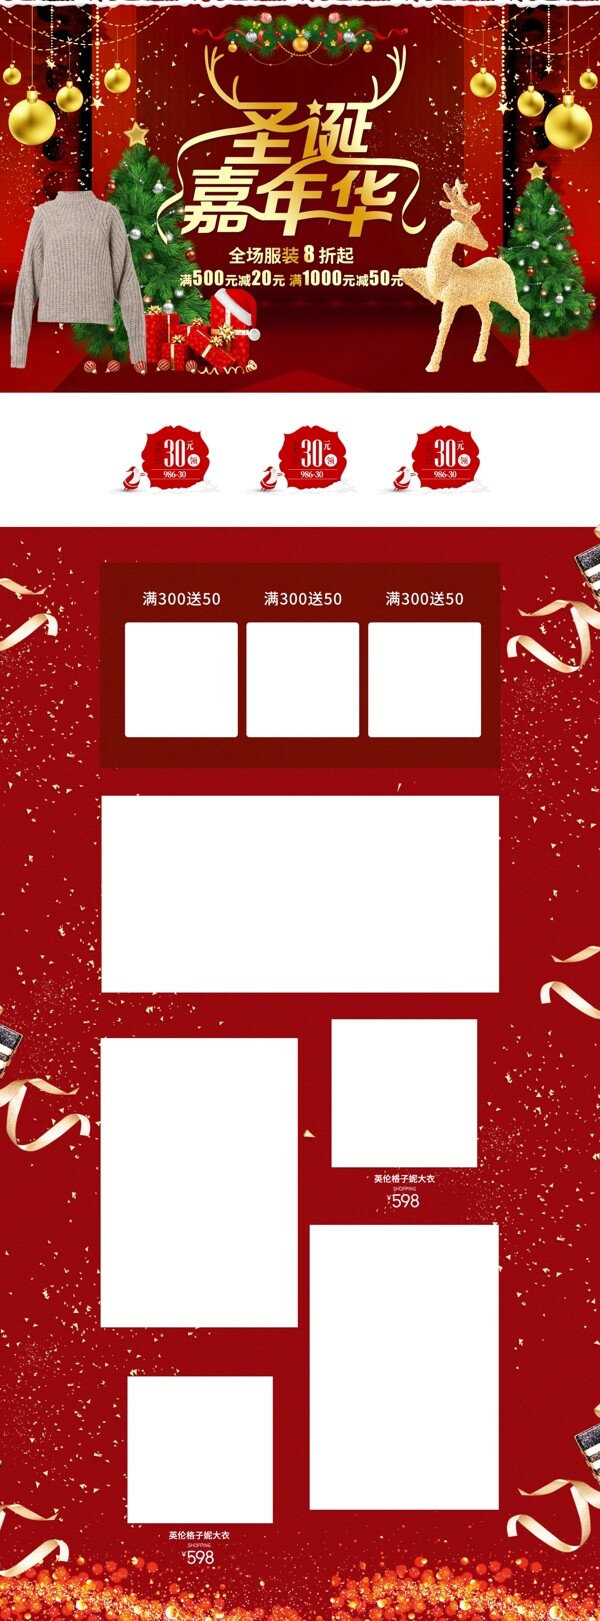 电商天猫圣诞嘉年华红色礼盒圣诞树服装首页